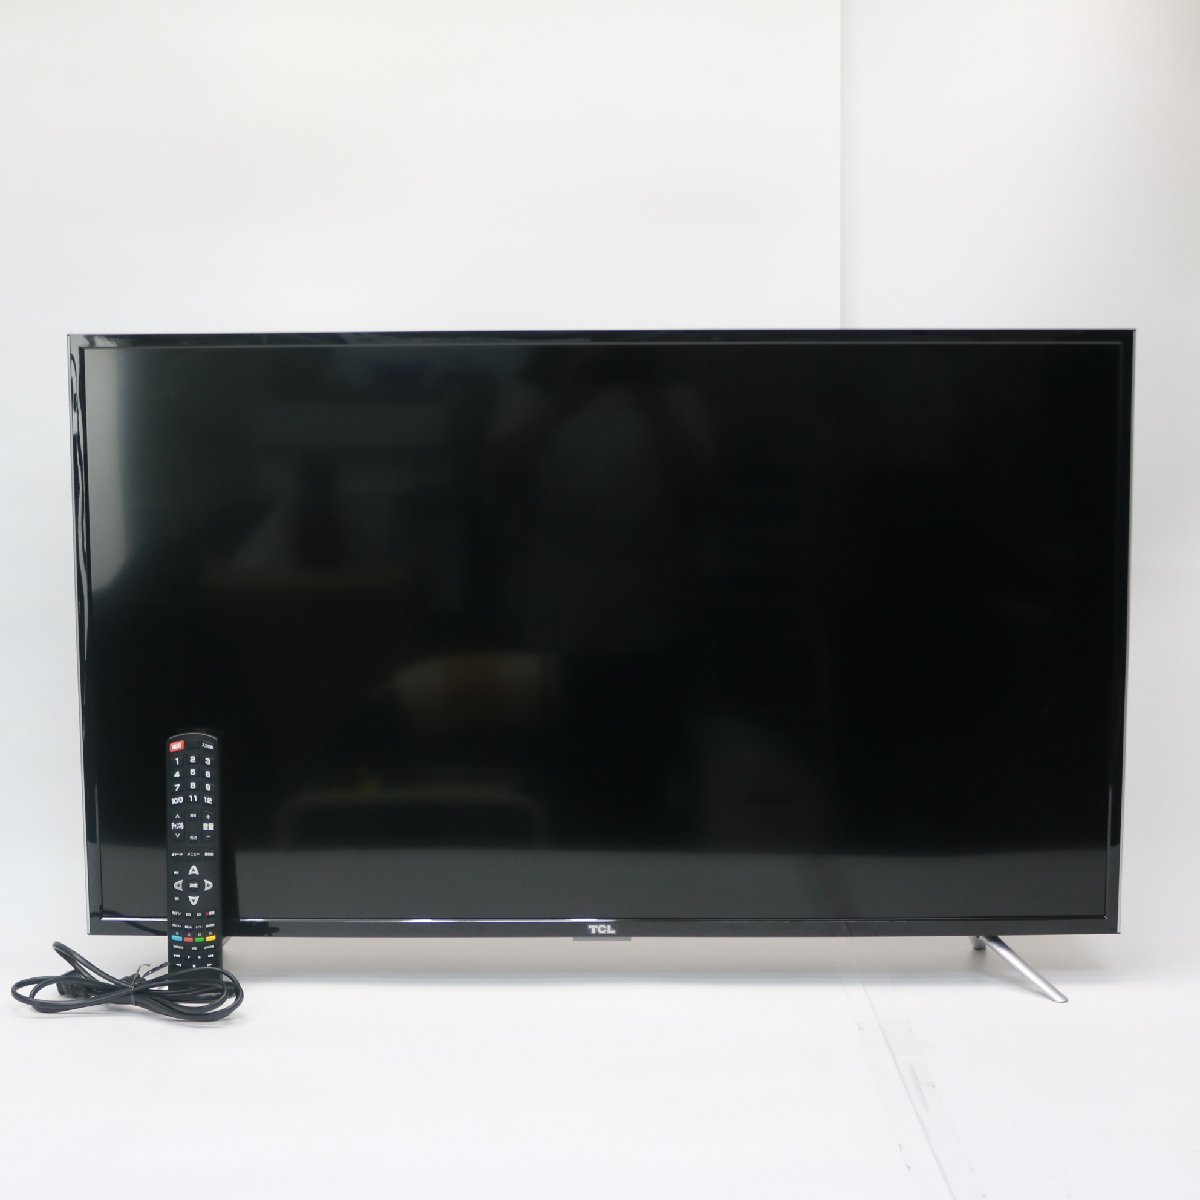 東京都練馬区にて TCL 液晶テレビ 43D2900F 2018年製 を出張買取させて頂きました。